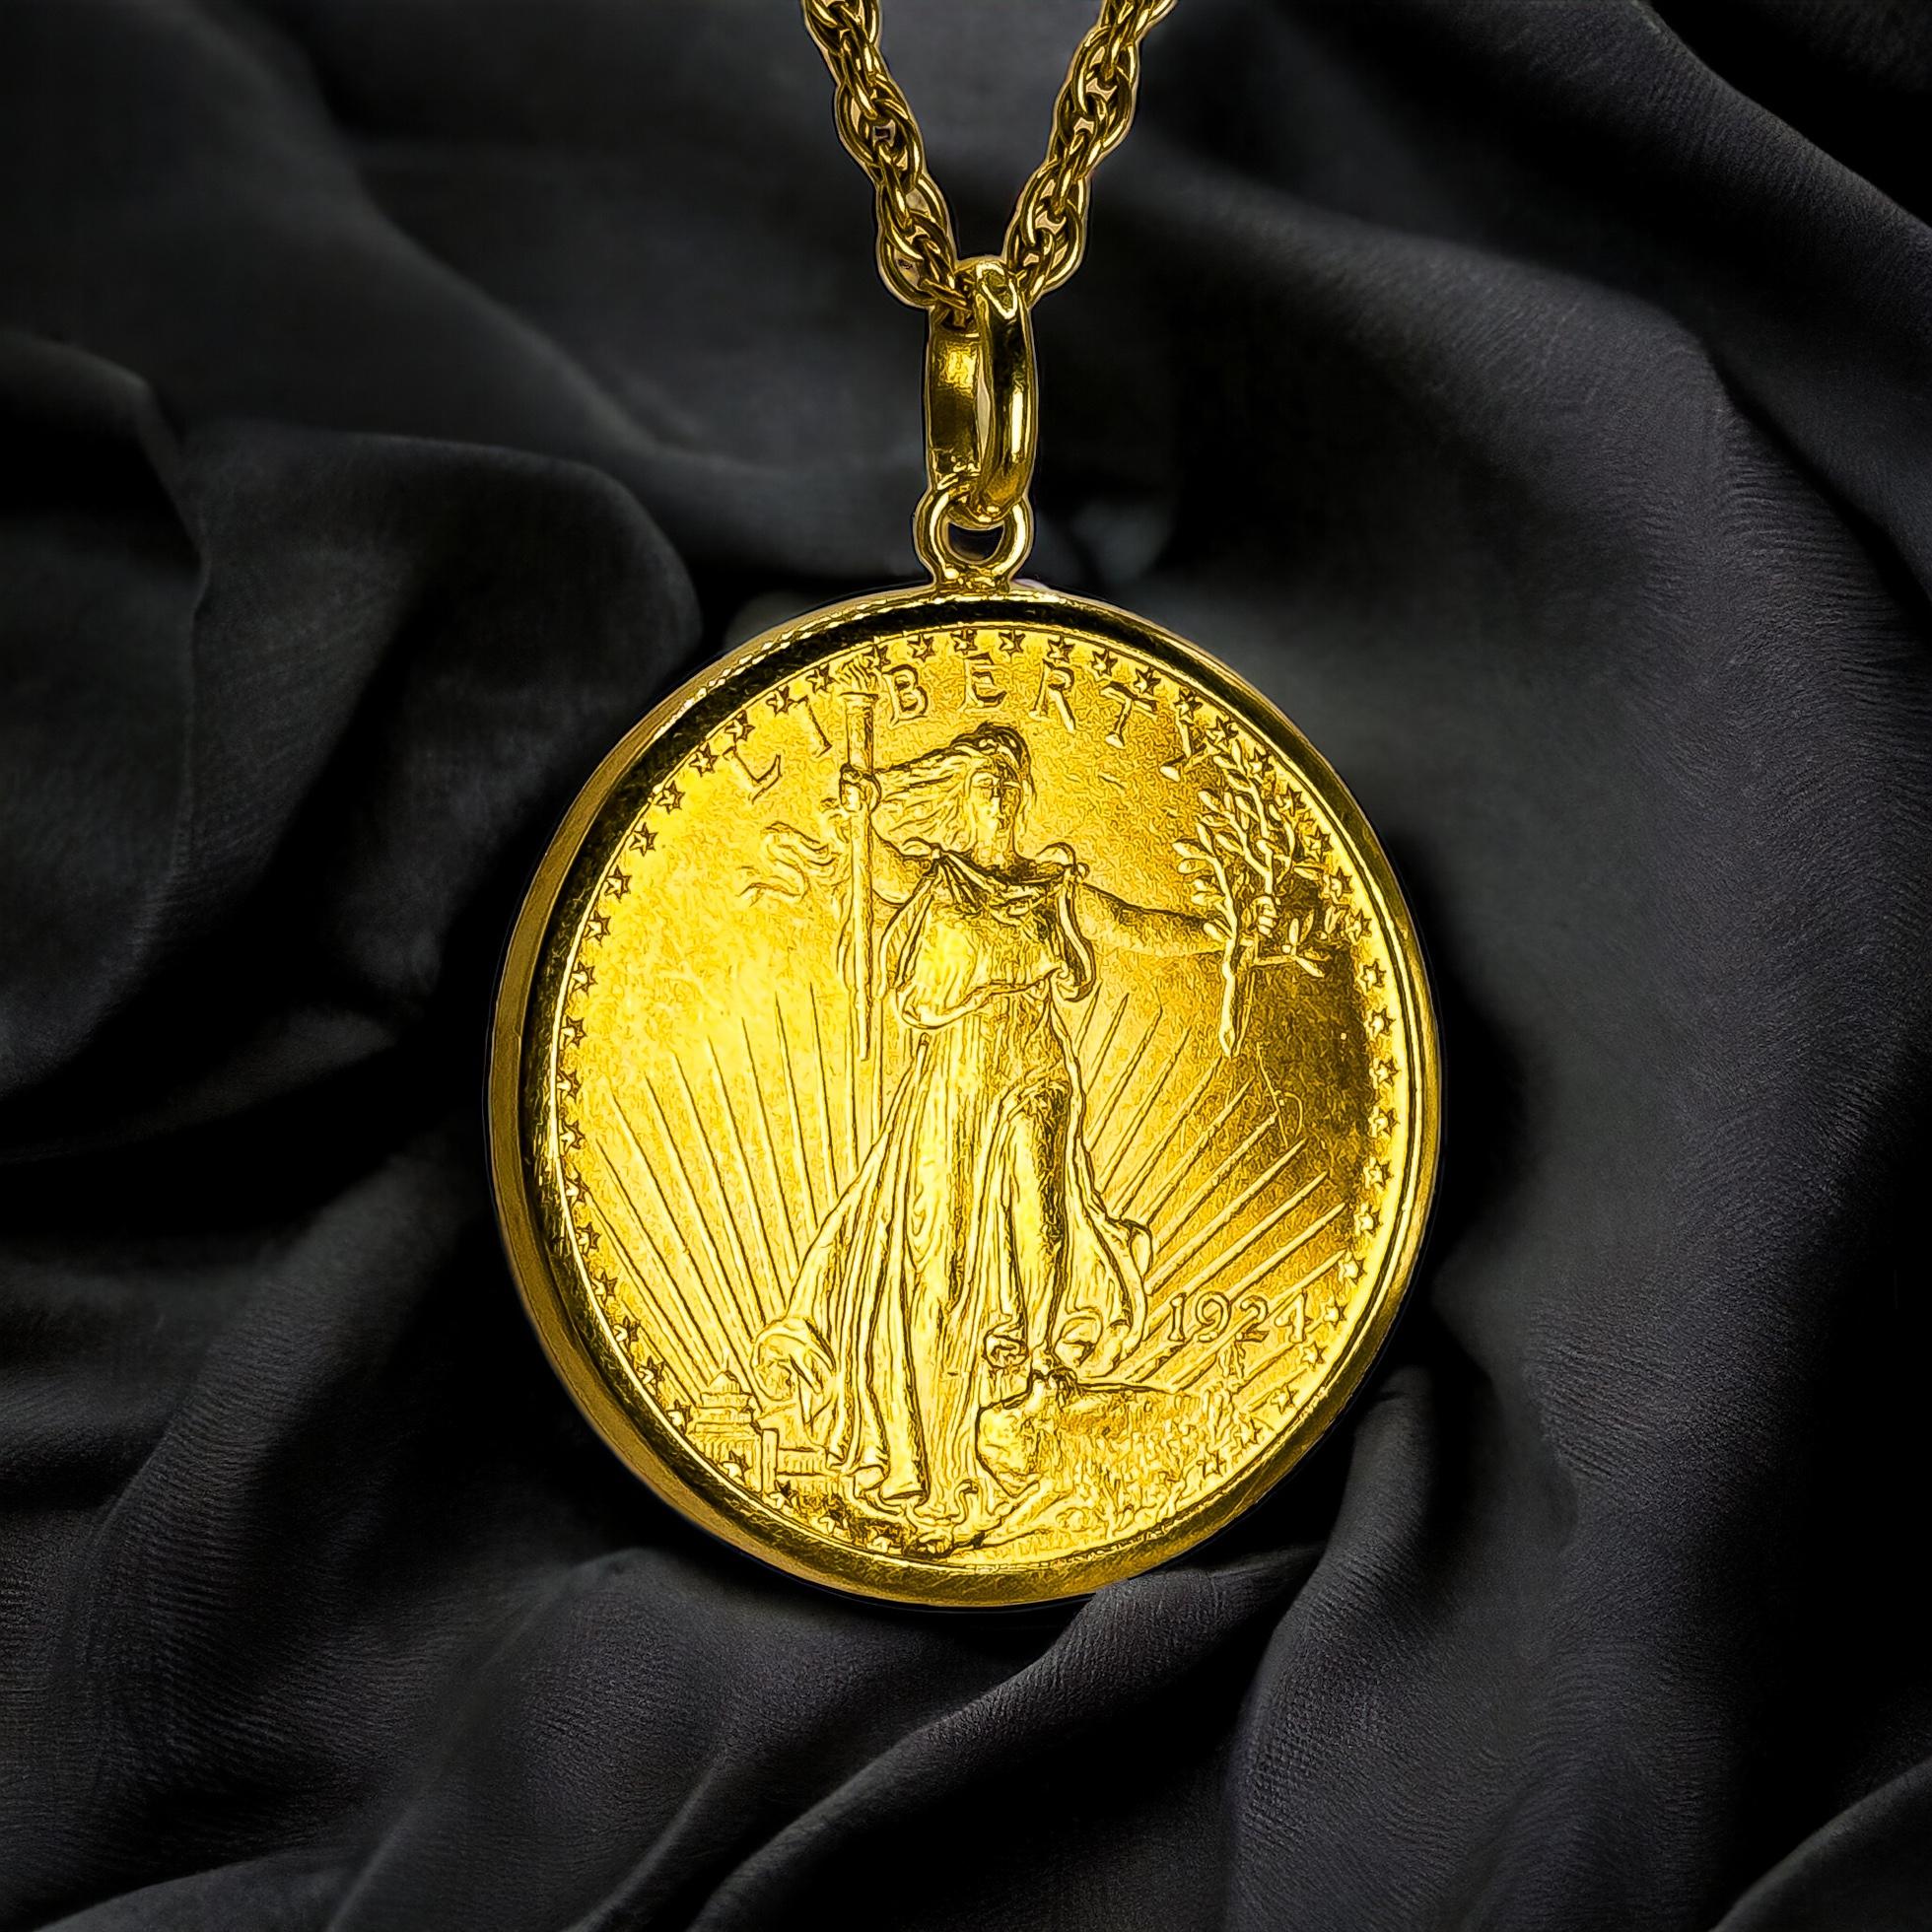 Dévoilez la Grandeurur de la Liberté - Un pendentif de rêve pour les collectionneurs

Ce majestueux pendentif représente une pièce d'or Liberty de 1 oz, un trésor de la numismatique américaine, désormais transformé en un superbe bijou. Fabriqué avec